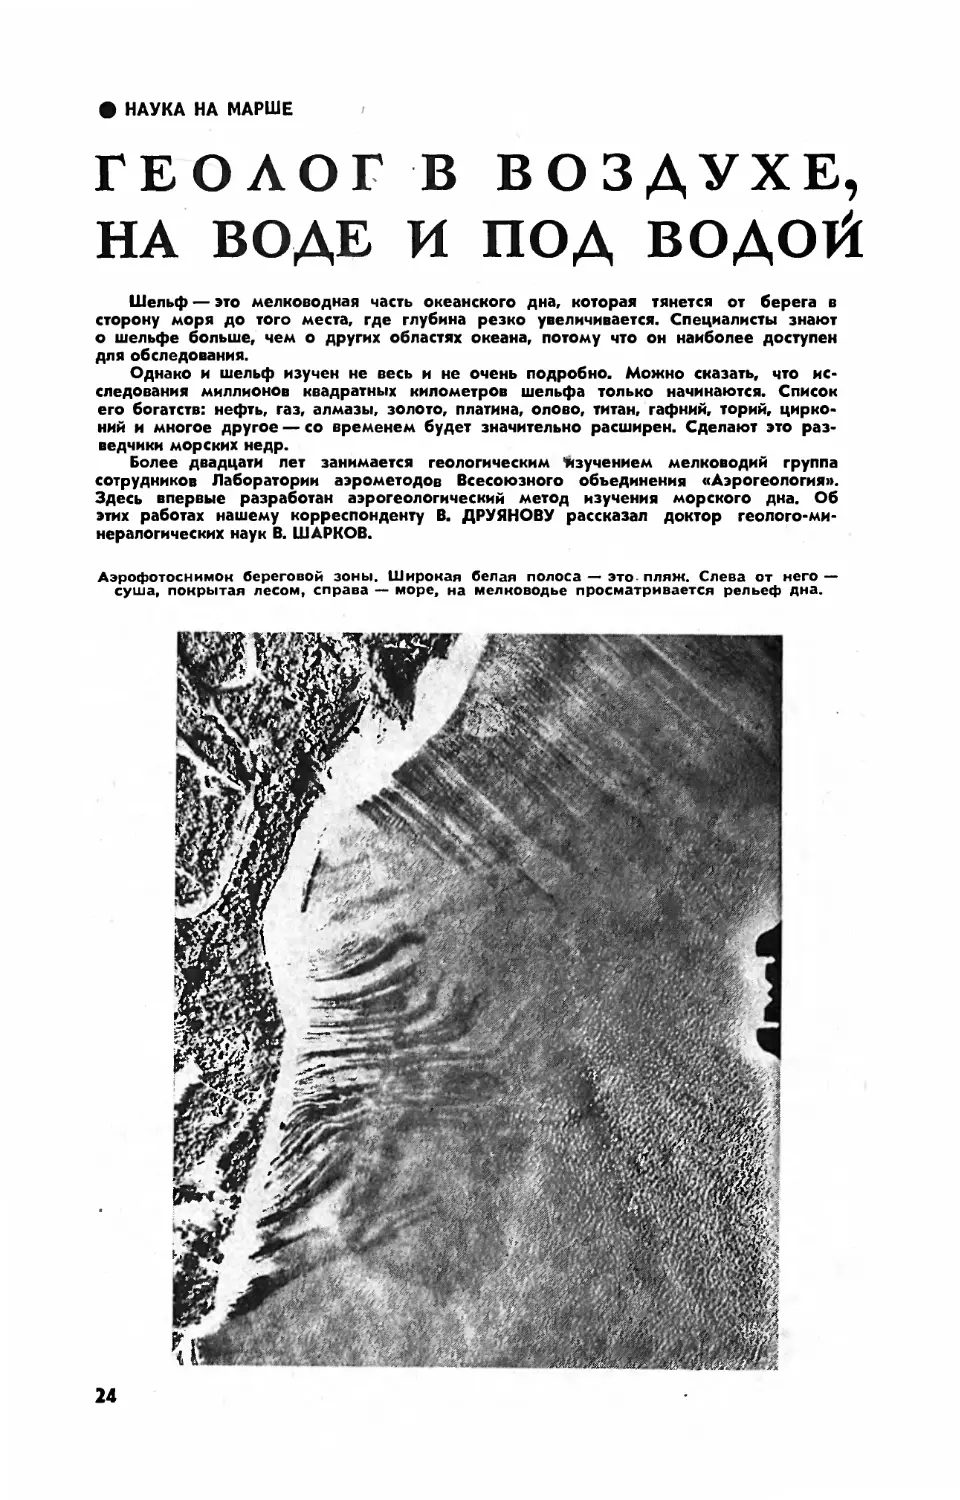 В. ШАРКОВ, докт. геол.-минерал. наук — Геолог в воздухе, на воде и под водой